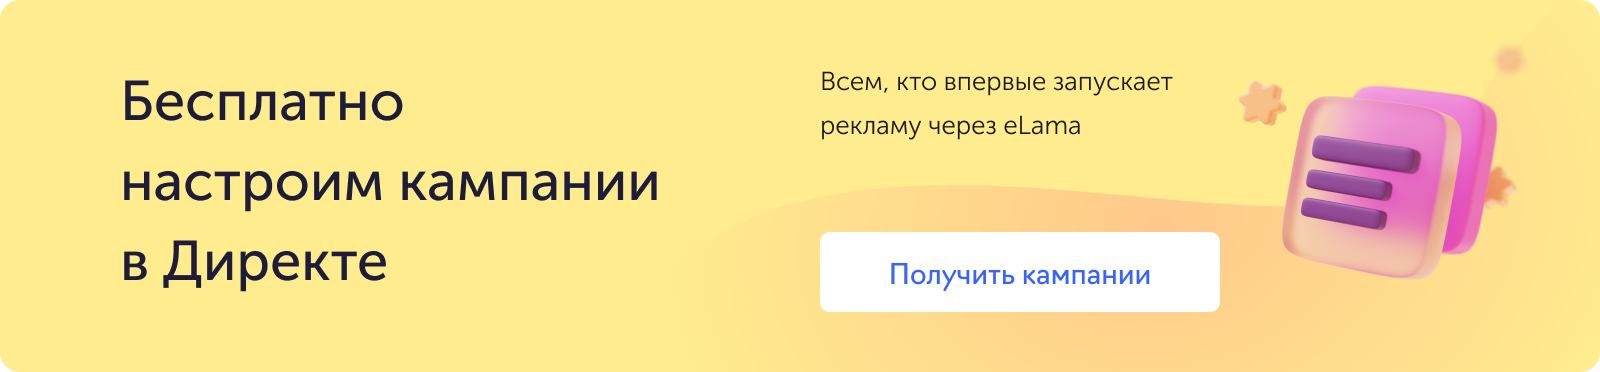 РК по акции в Яндекс Директе